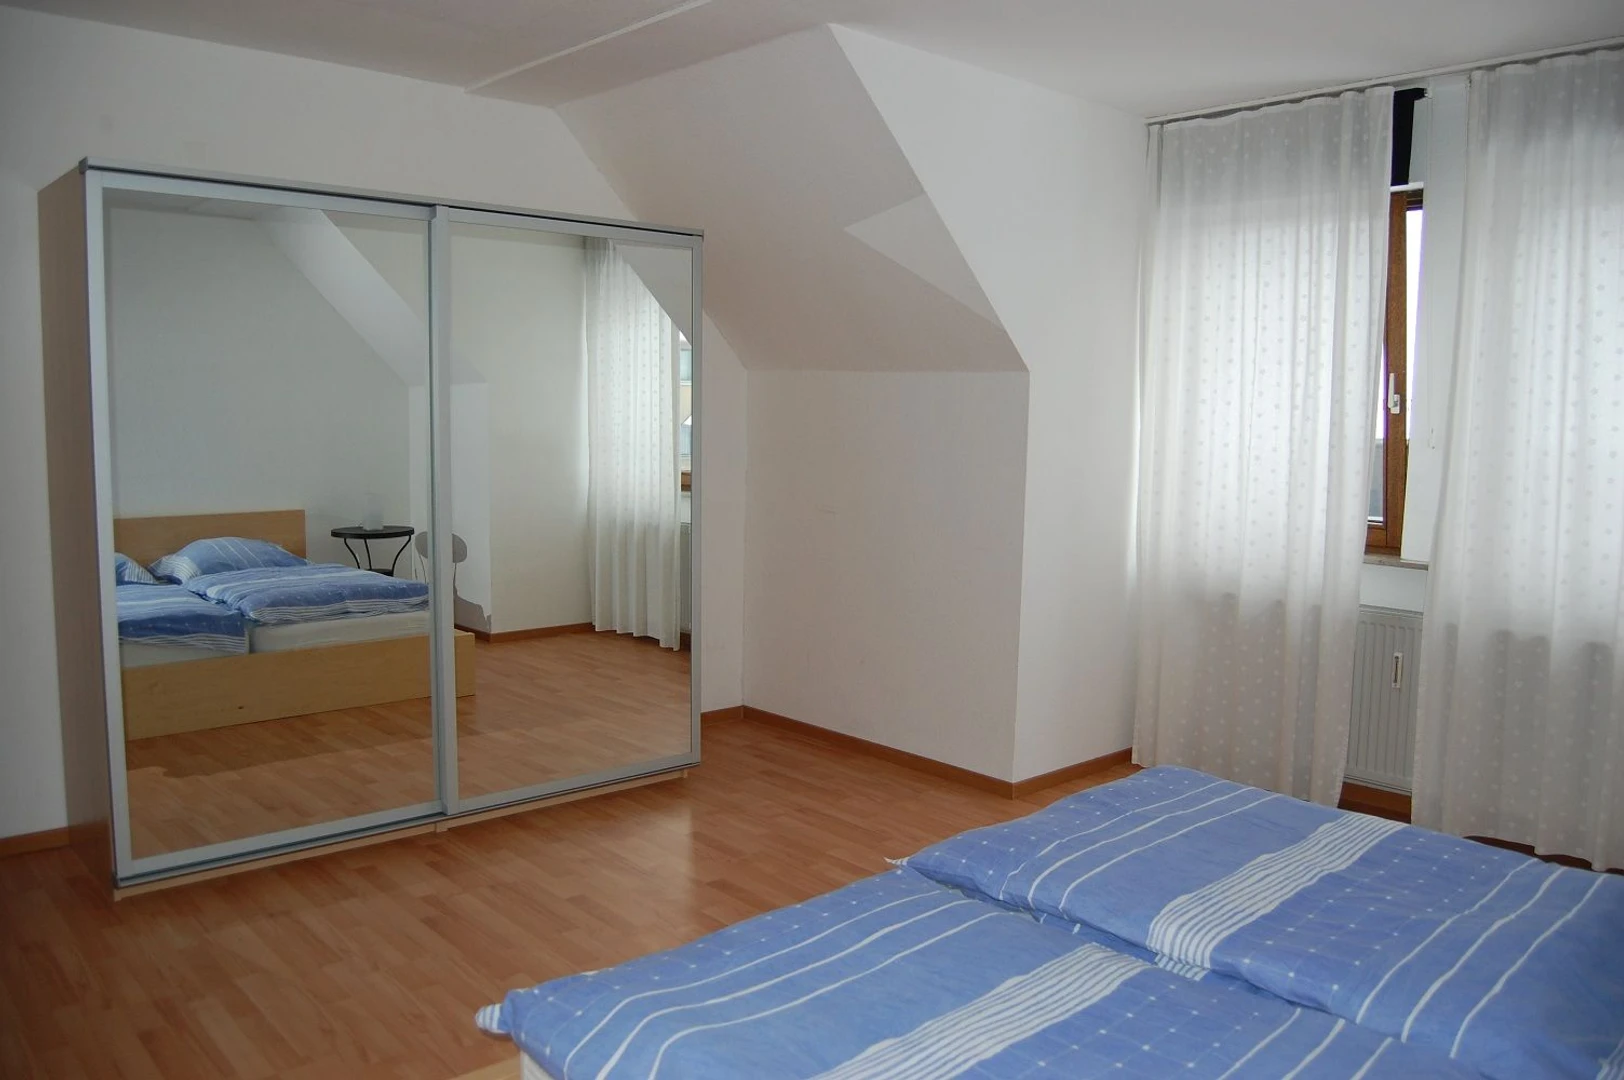 Erlangen de ucuz özel oda